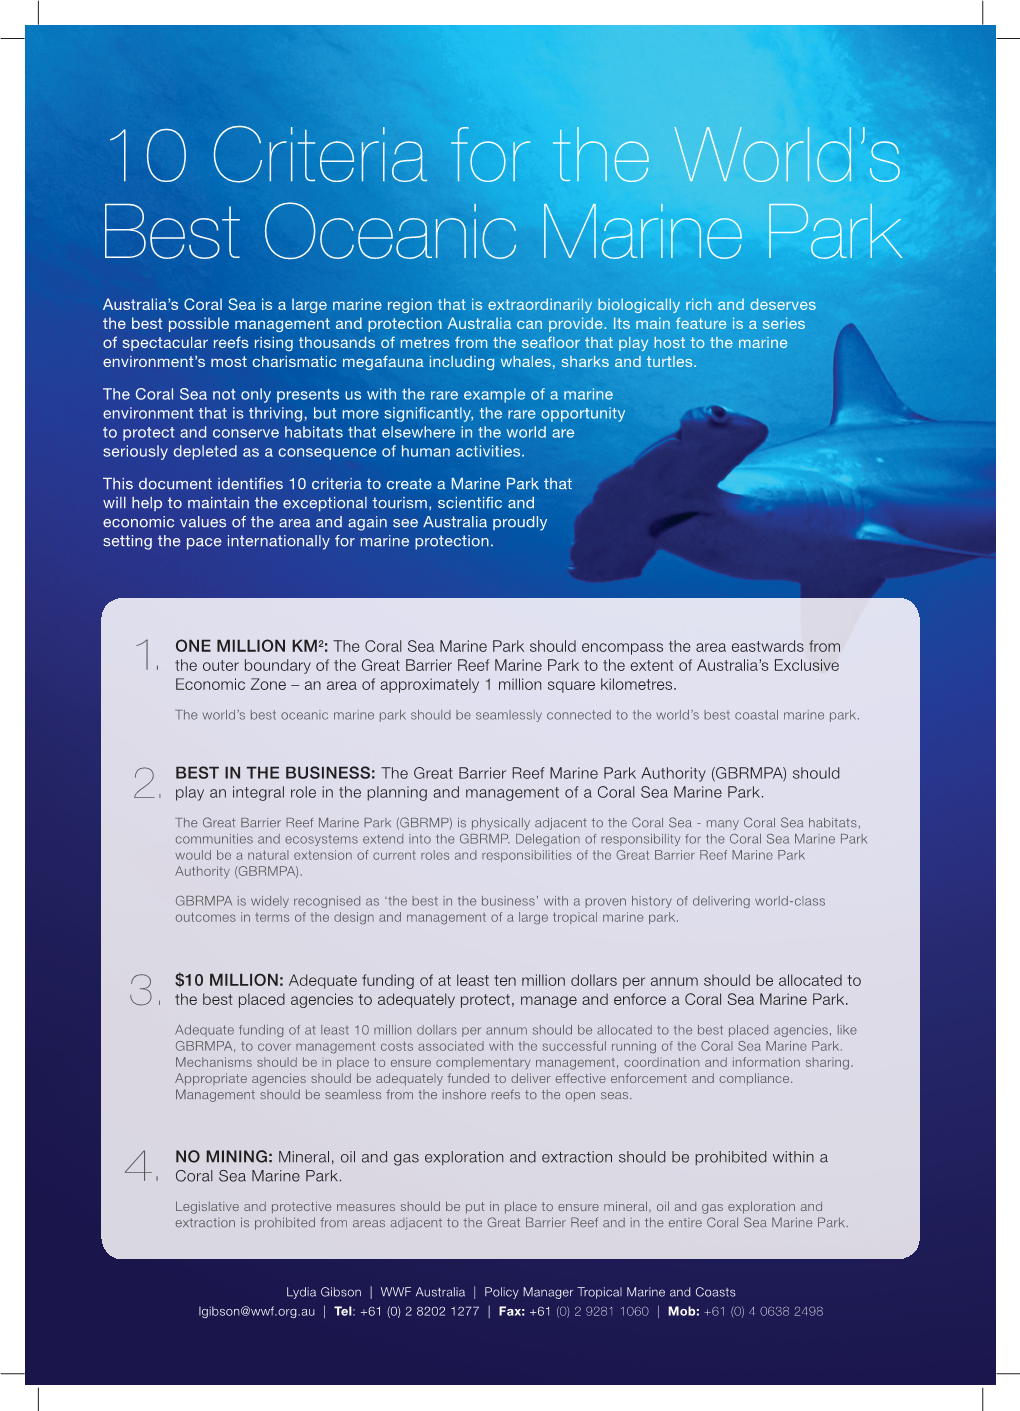 10 Criteria for the World's Best Oceanic Marine Park